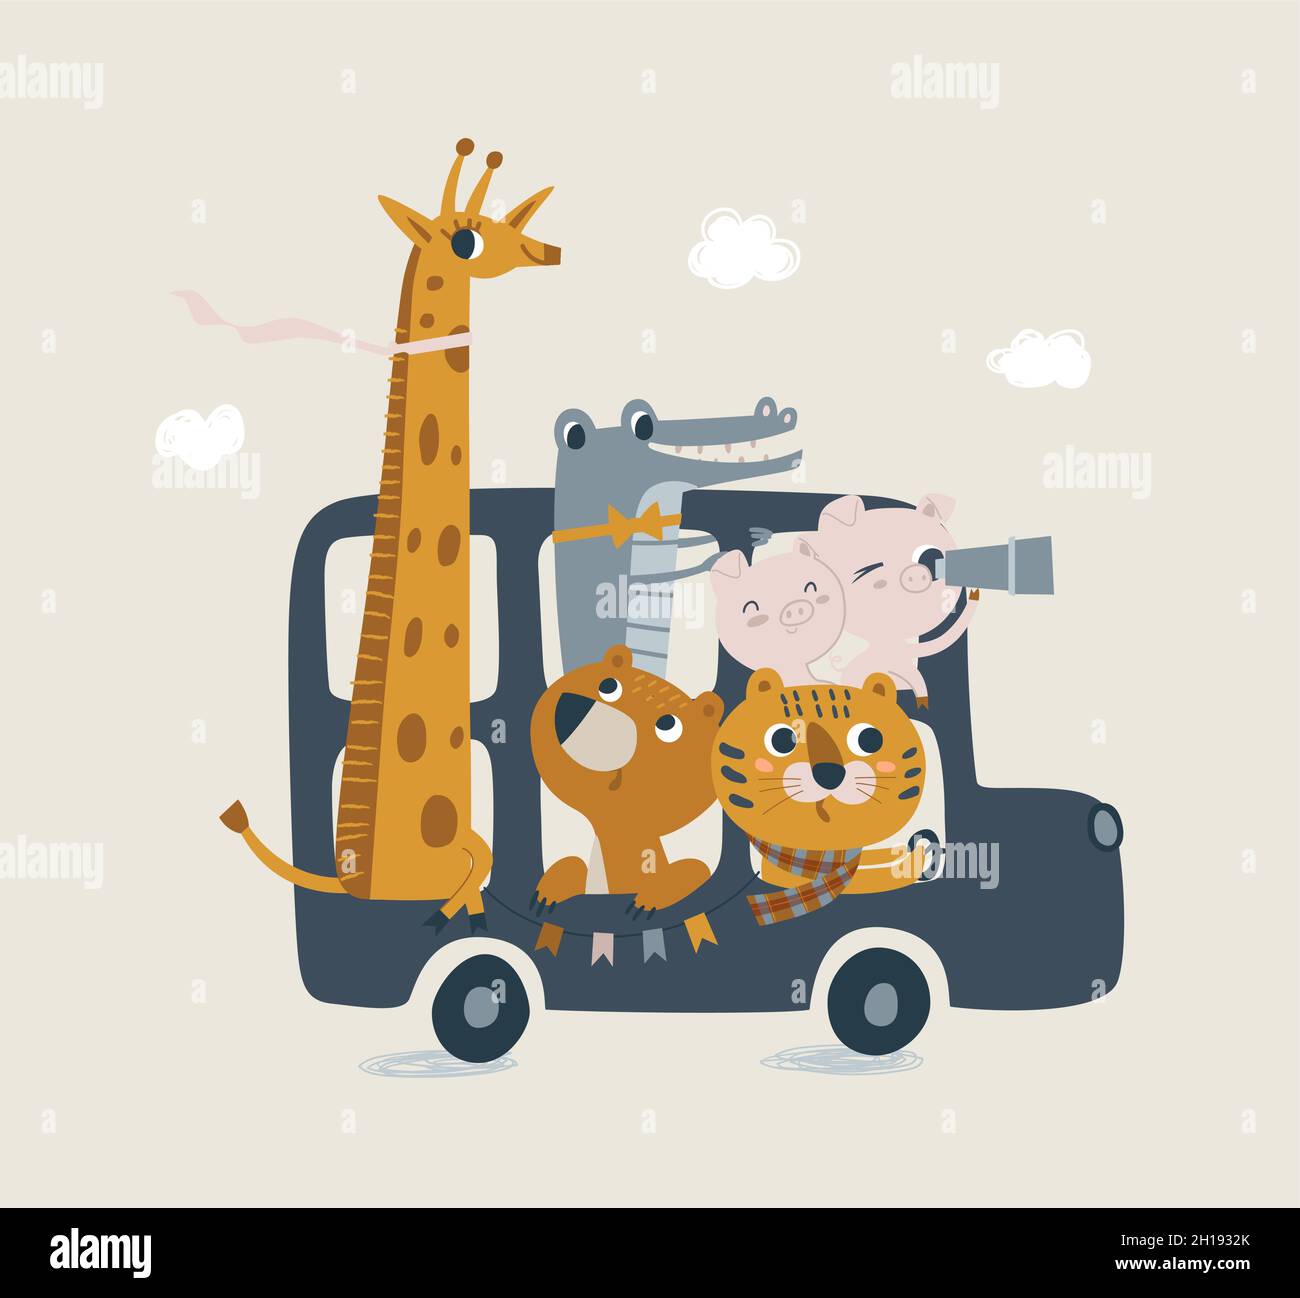 Joli bus londonien avec des animaux dans des tons pastel.Lion cub, crocodile, girafe, ours illustration pour nouveau-né.Illustration avec douche de bébé mignonne Illustration de Vecteur